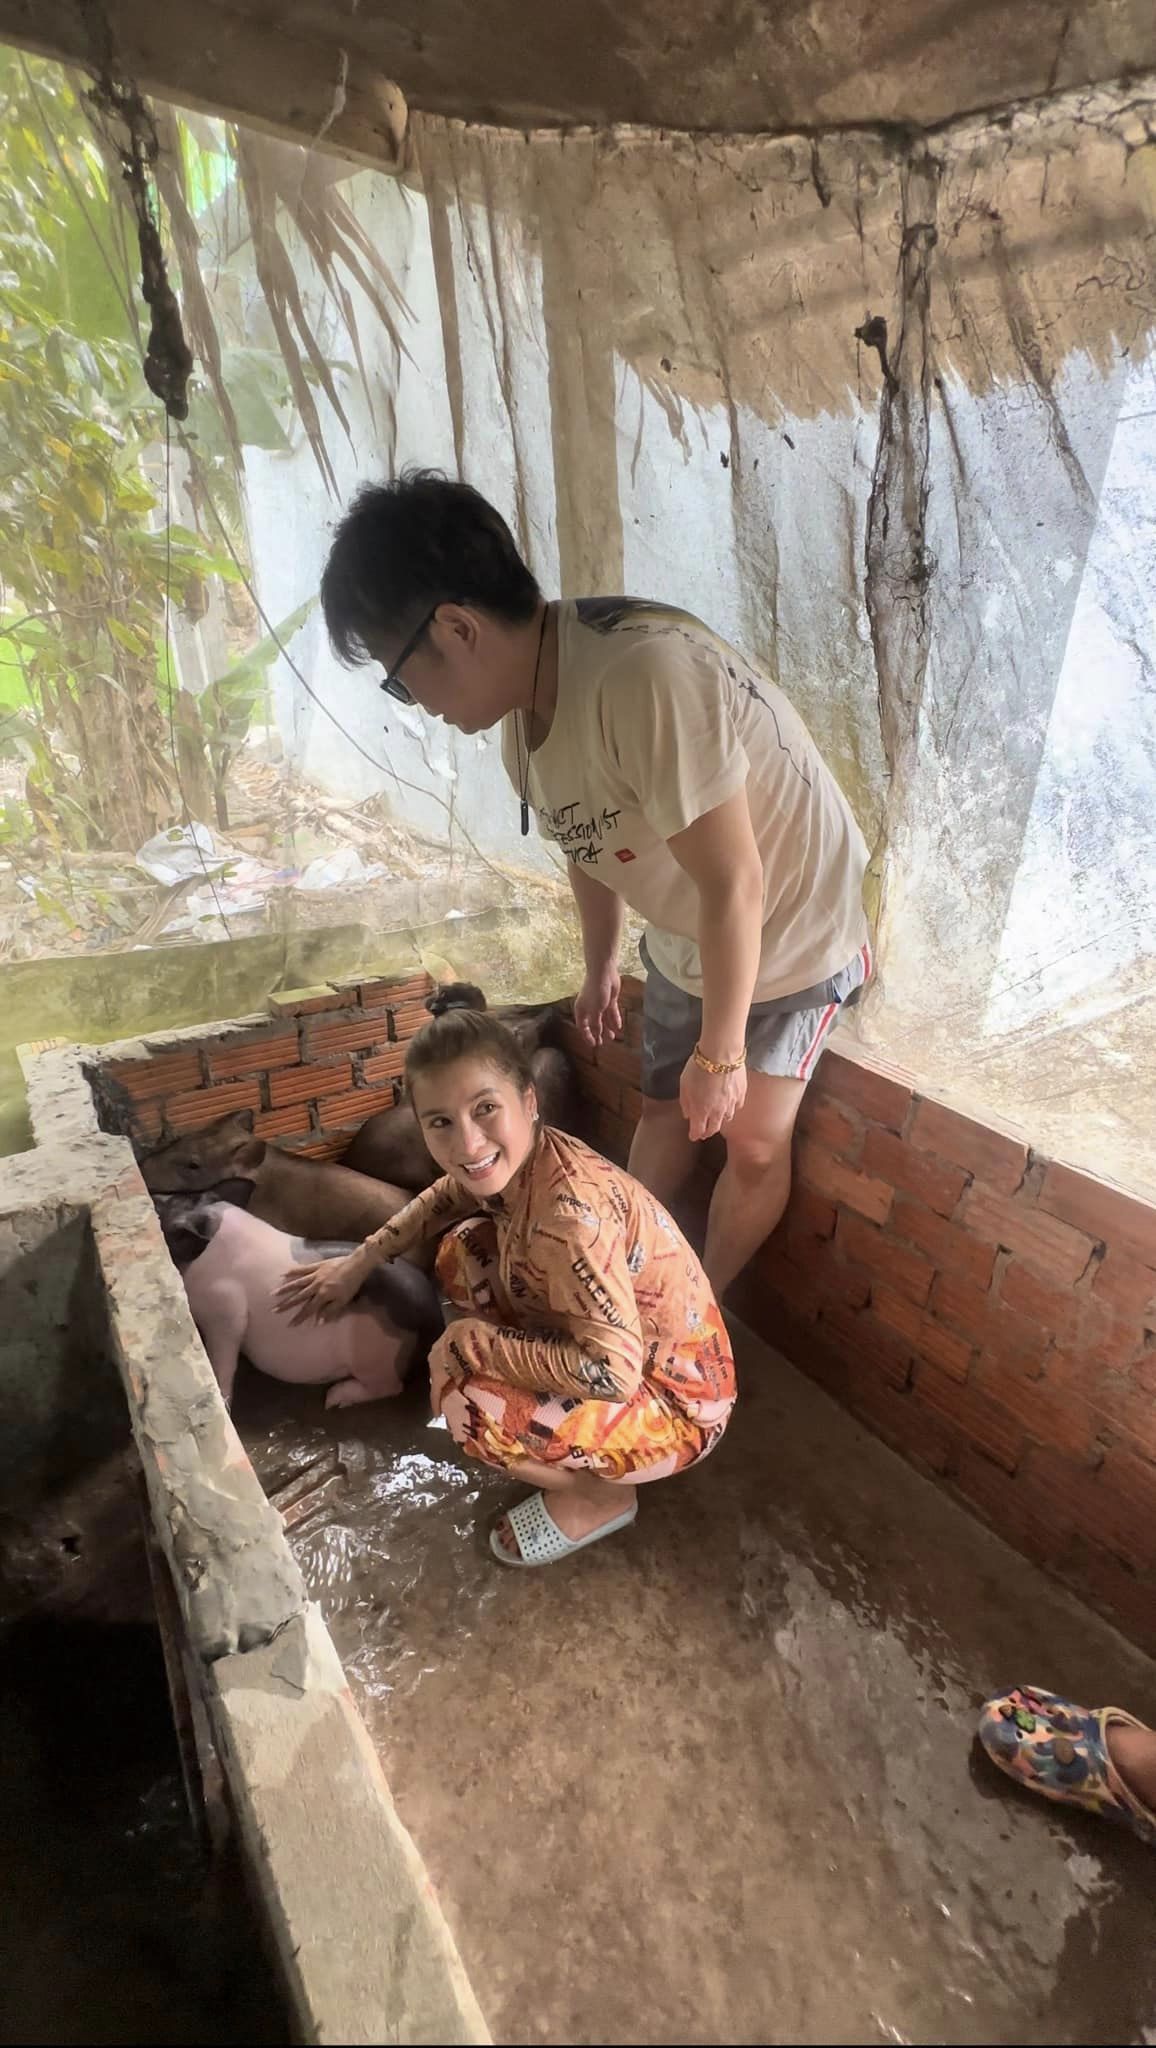 Đức Nhân đưa chồng người Nhật về Việt Nam tắm heo, lội ruộng bắt cá mặc sình bùn khiến netizen thích thú - ảnh 3